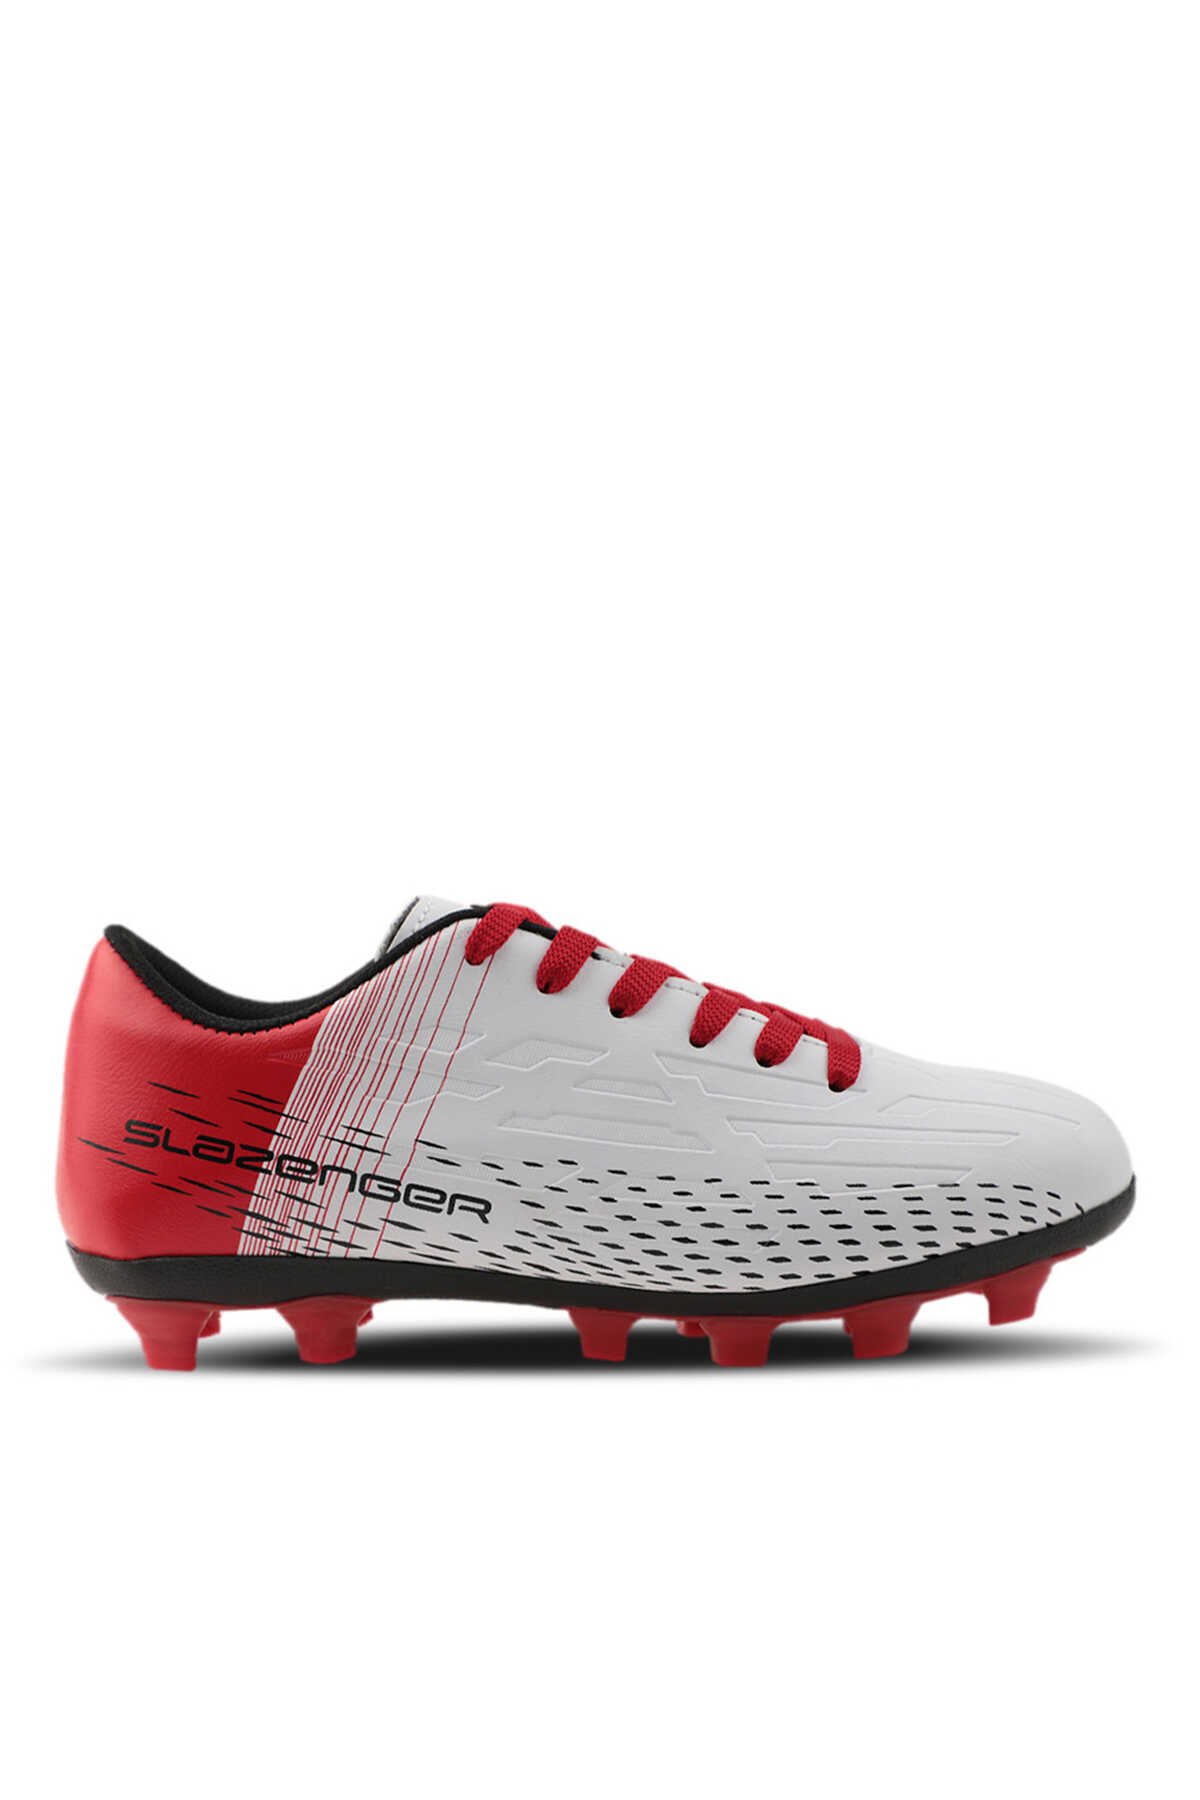 Slazenger - Slazenger SCORE I KR Futbol Erkek Krampon Ayakkabı Beyaz / Kırmızı